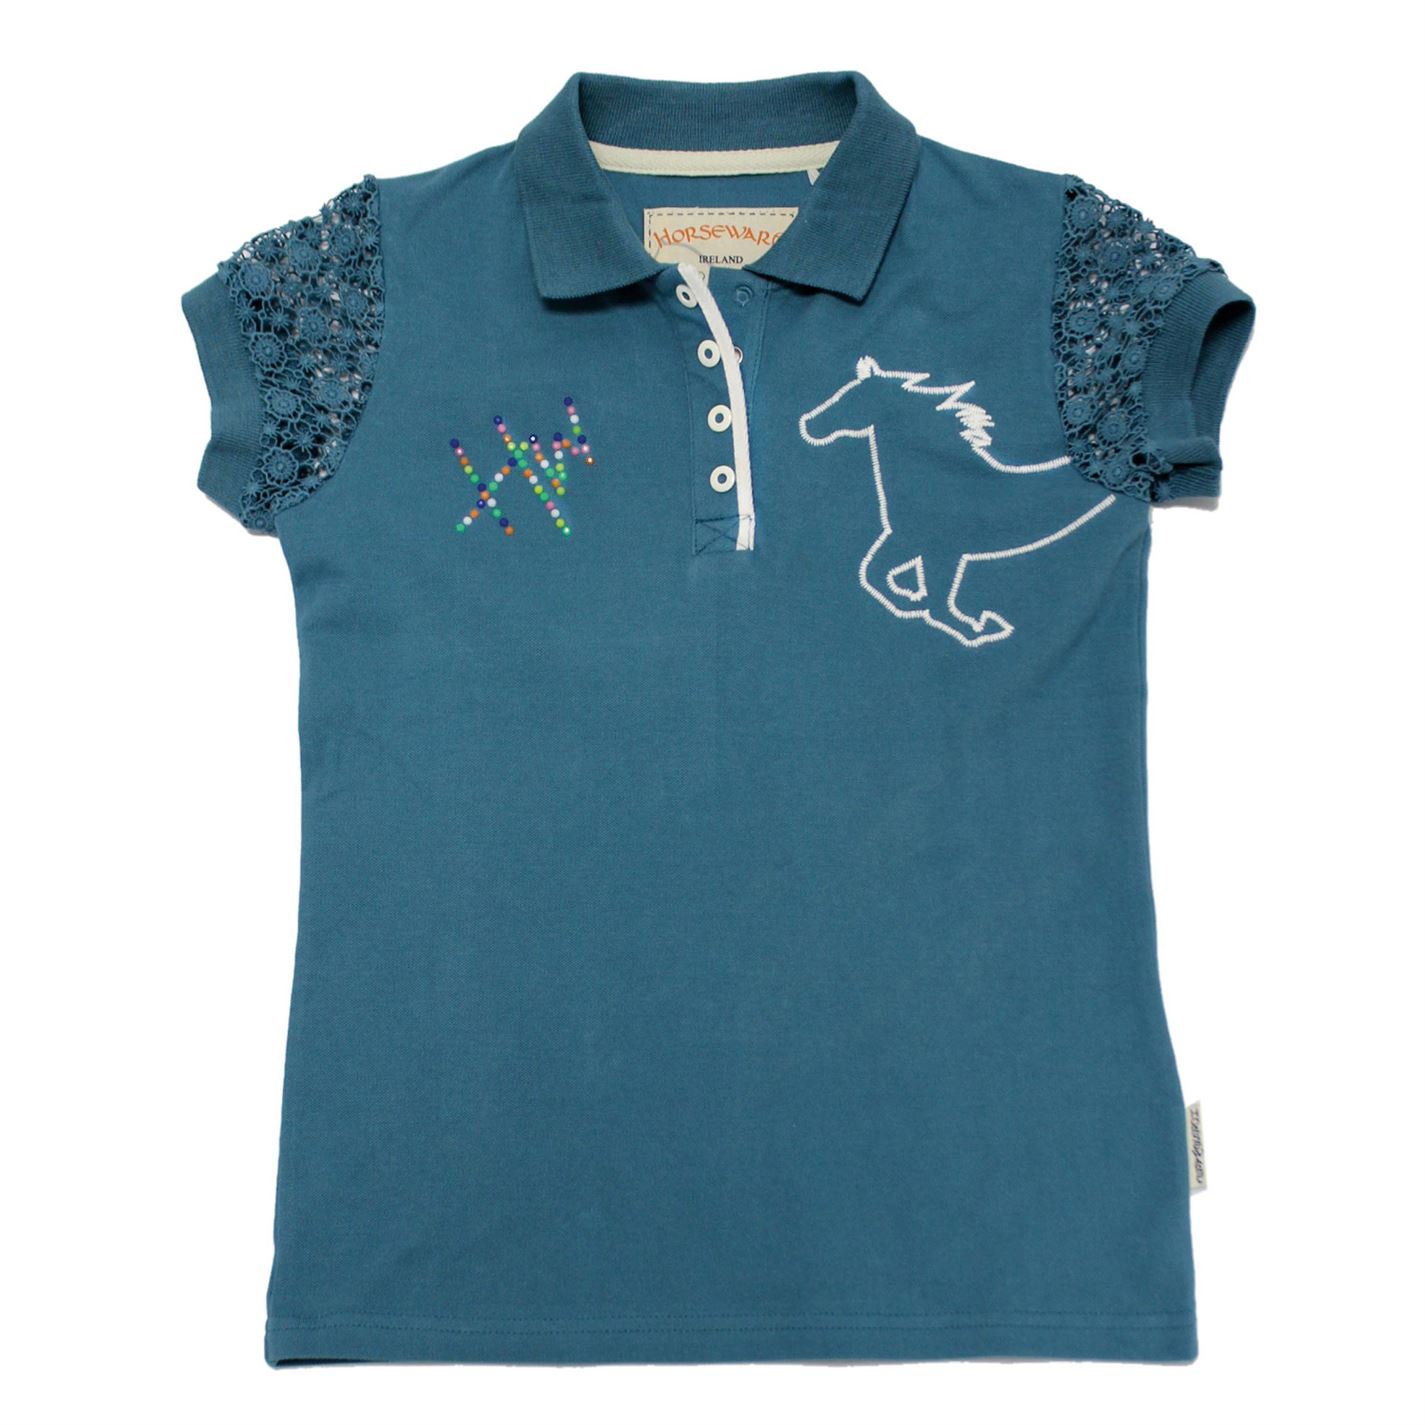 Tricouri Polo echitatie Pique pentru fete pentru Bebelusi brittany albastru